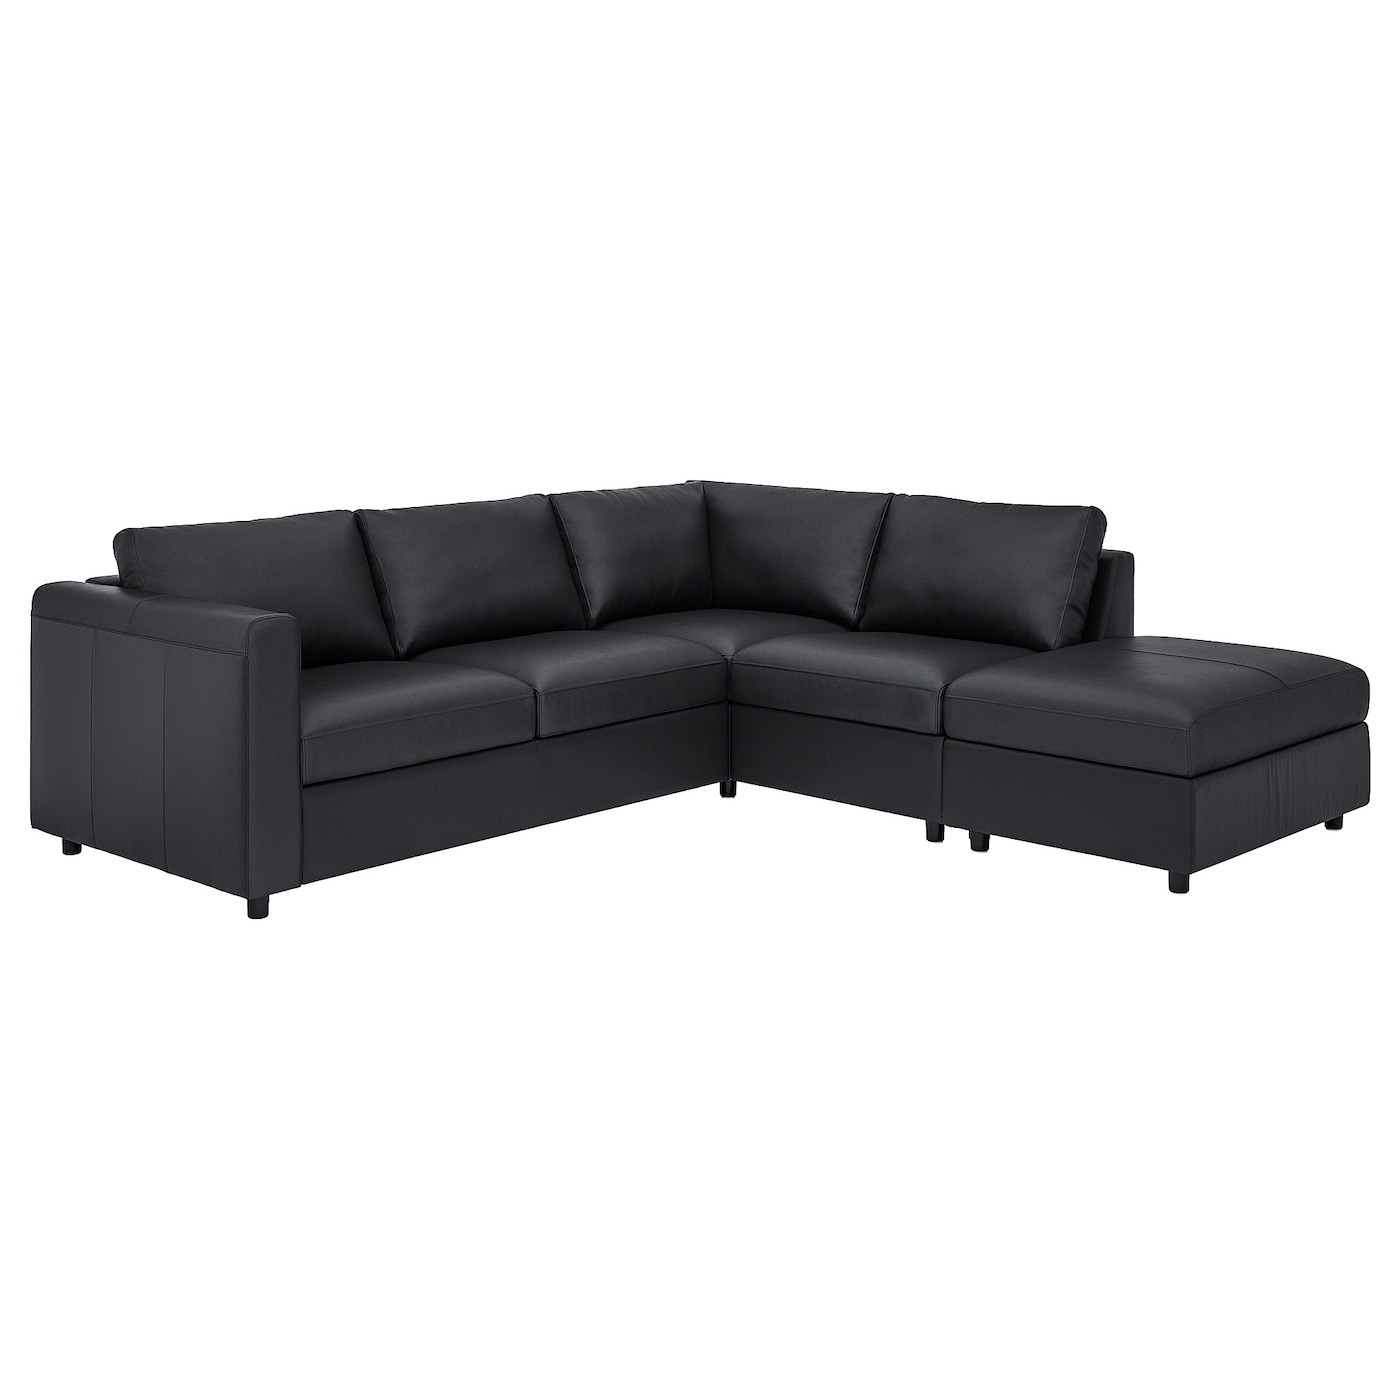 ВИМЛЕ 4-местный угловой диван,откидной/Гранн/Бомстад черный VIMLE IKEA